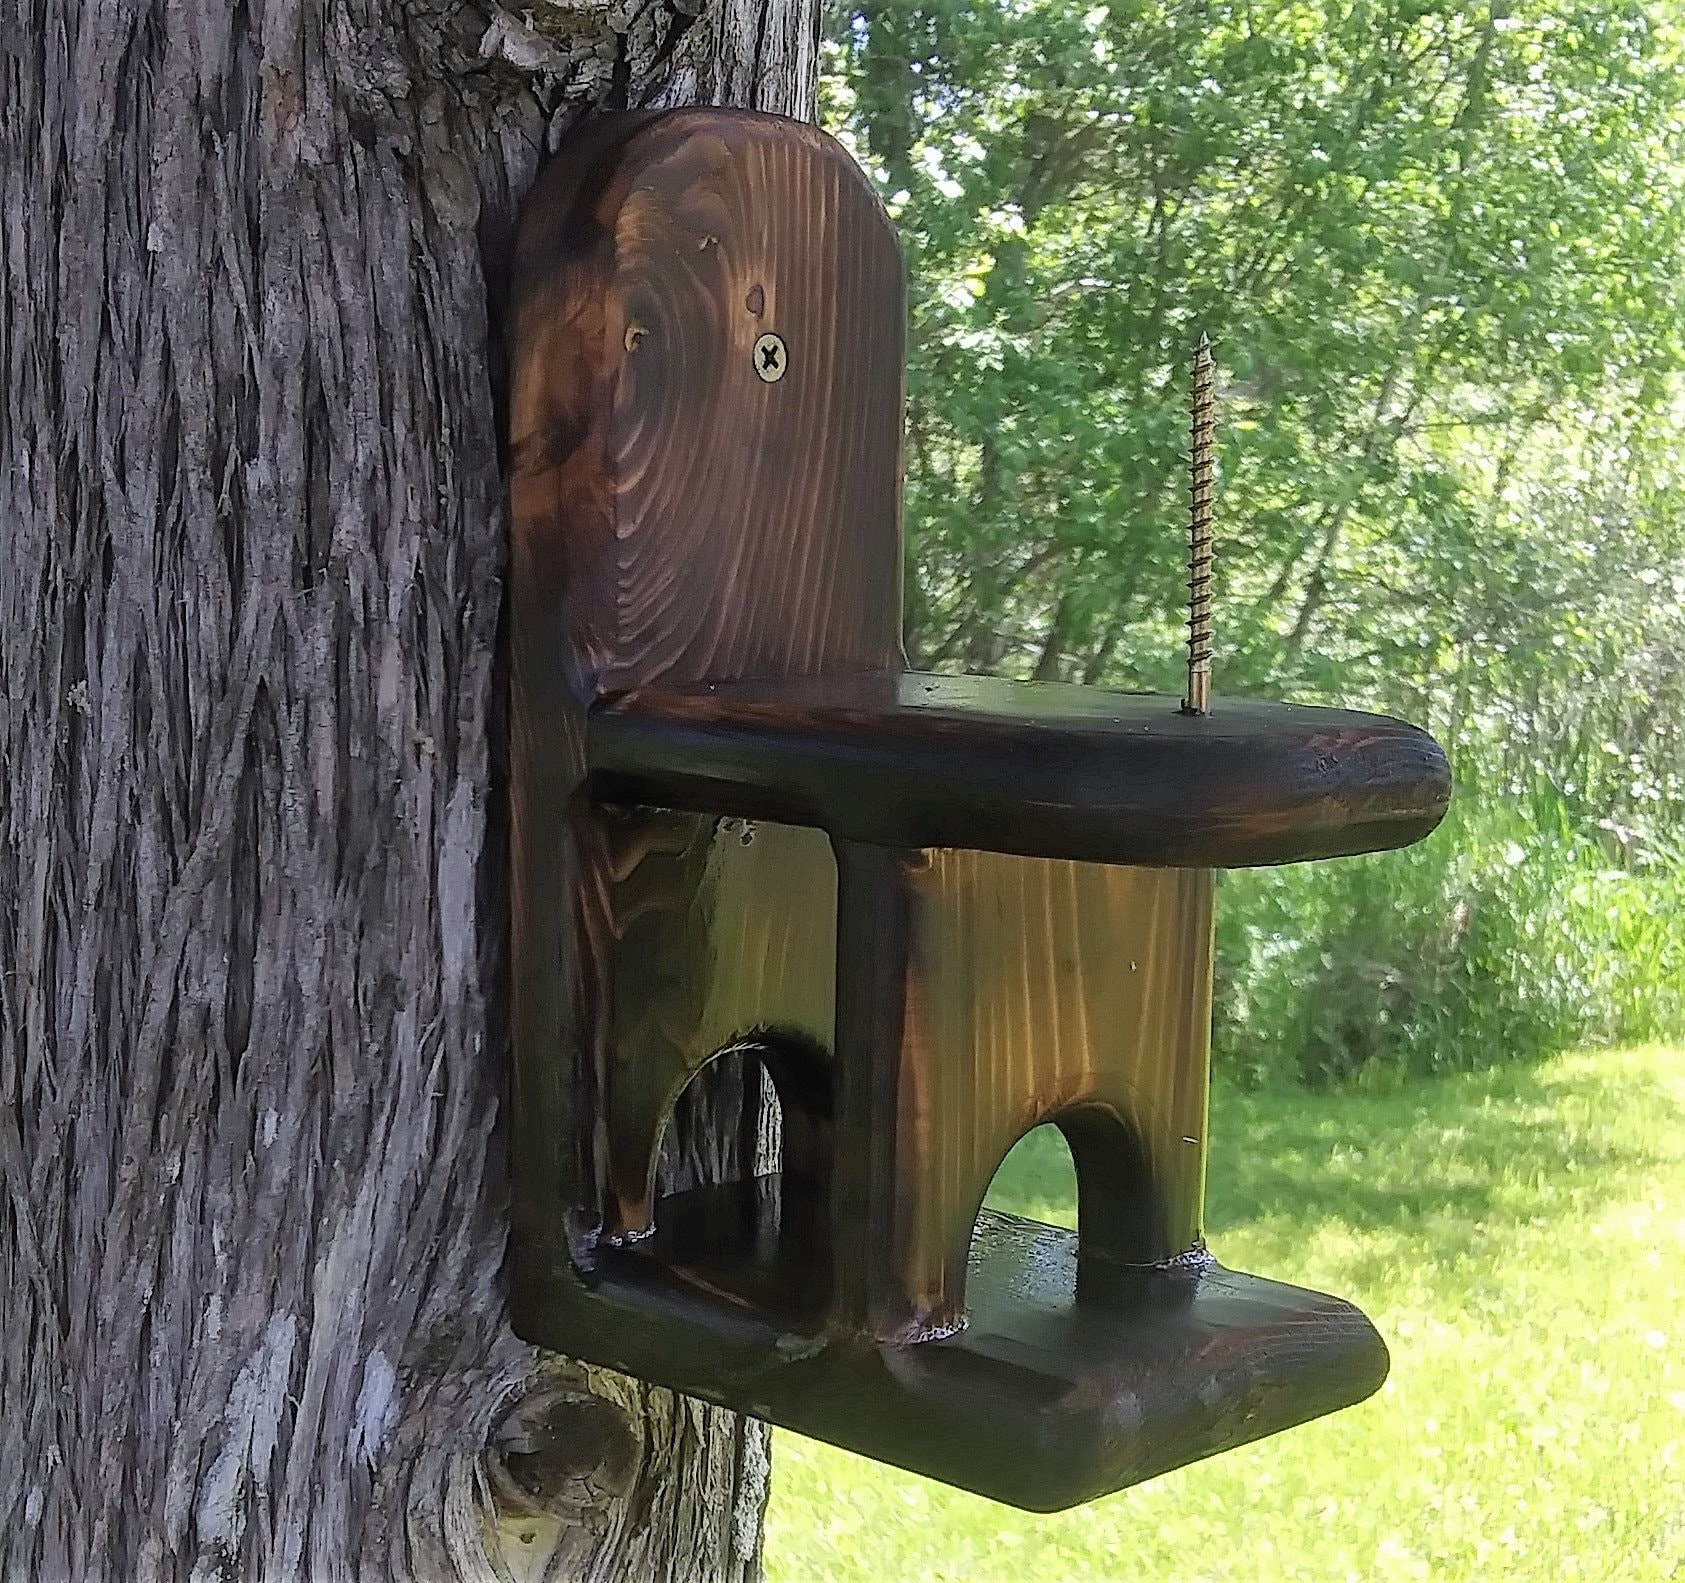 Cute decorative Corn Cob Squirrel feeder TBNUP #1B cedar wood